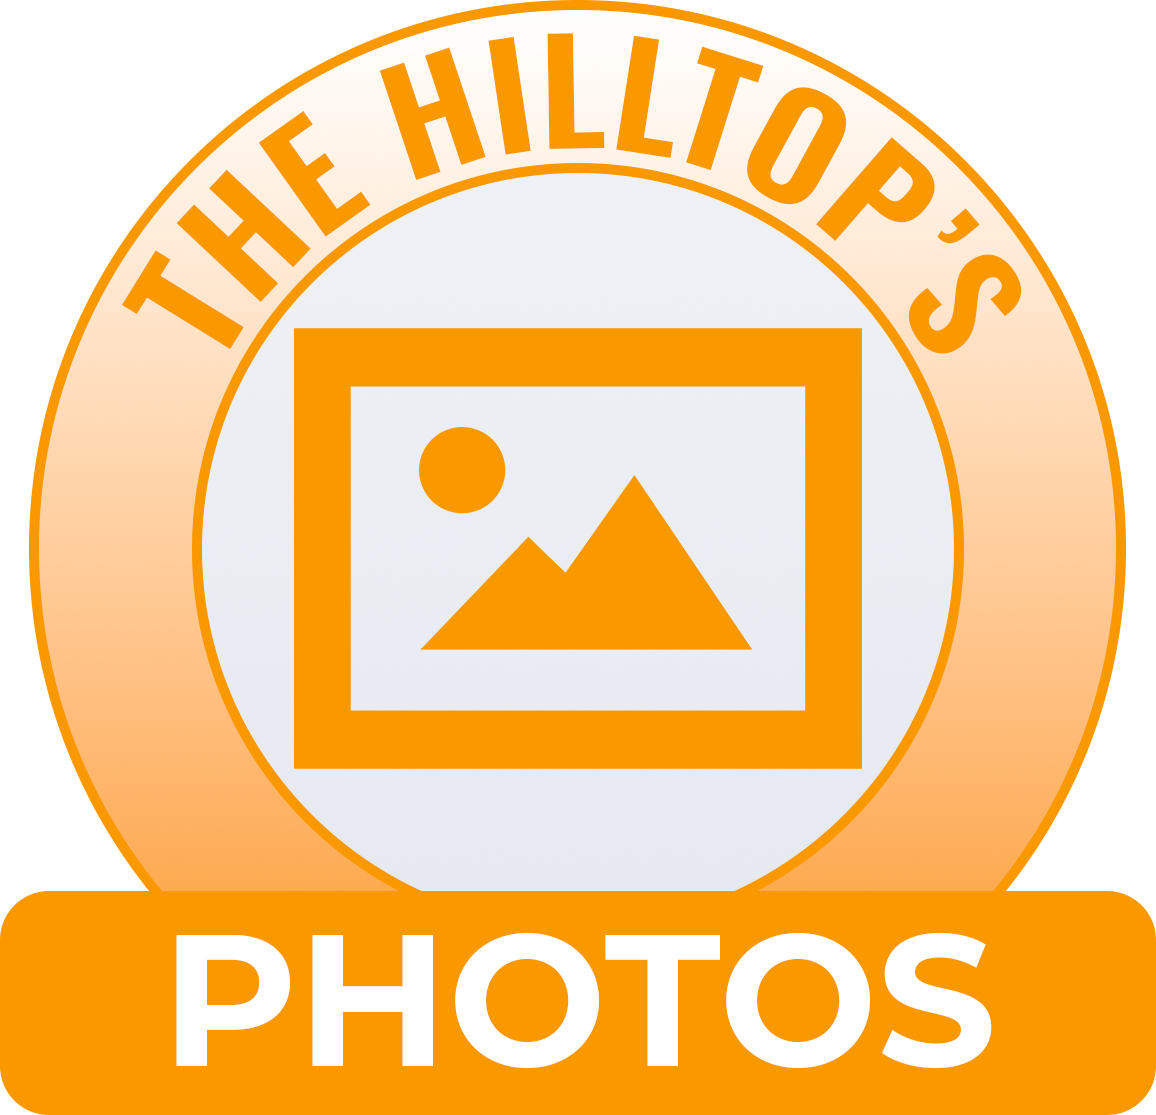 Hilltop Photos